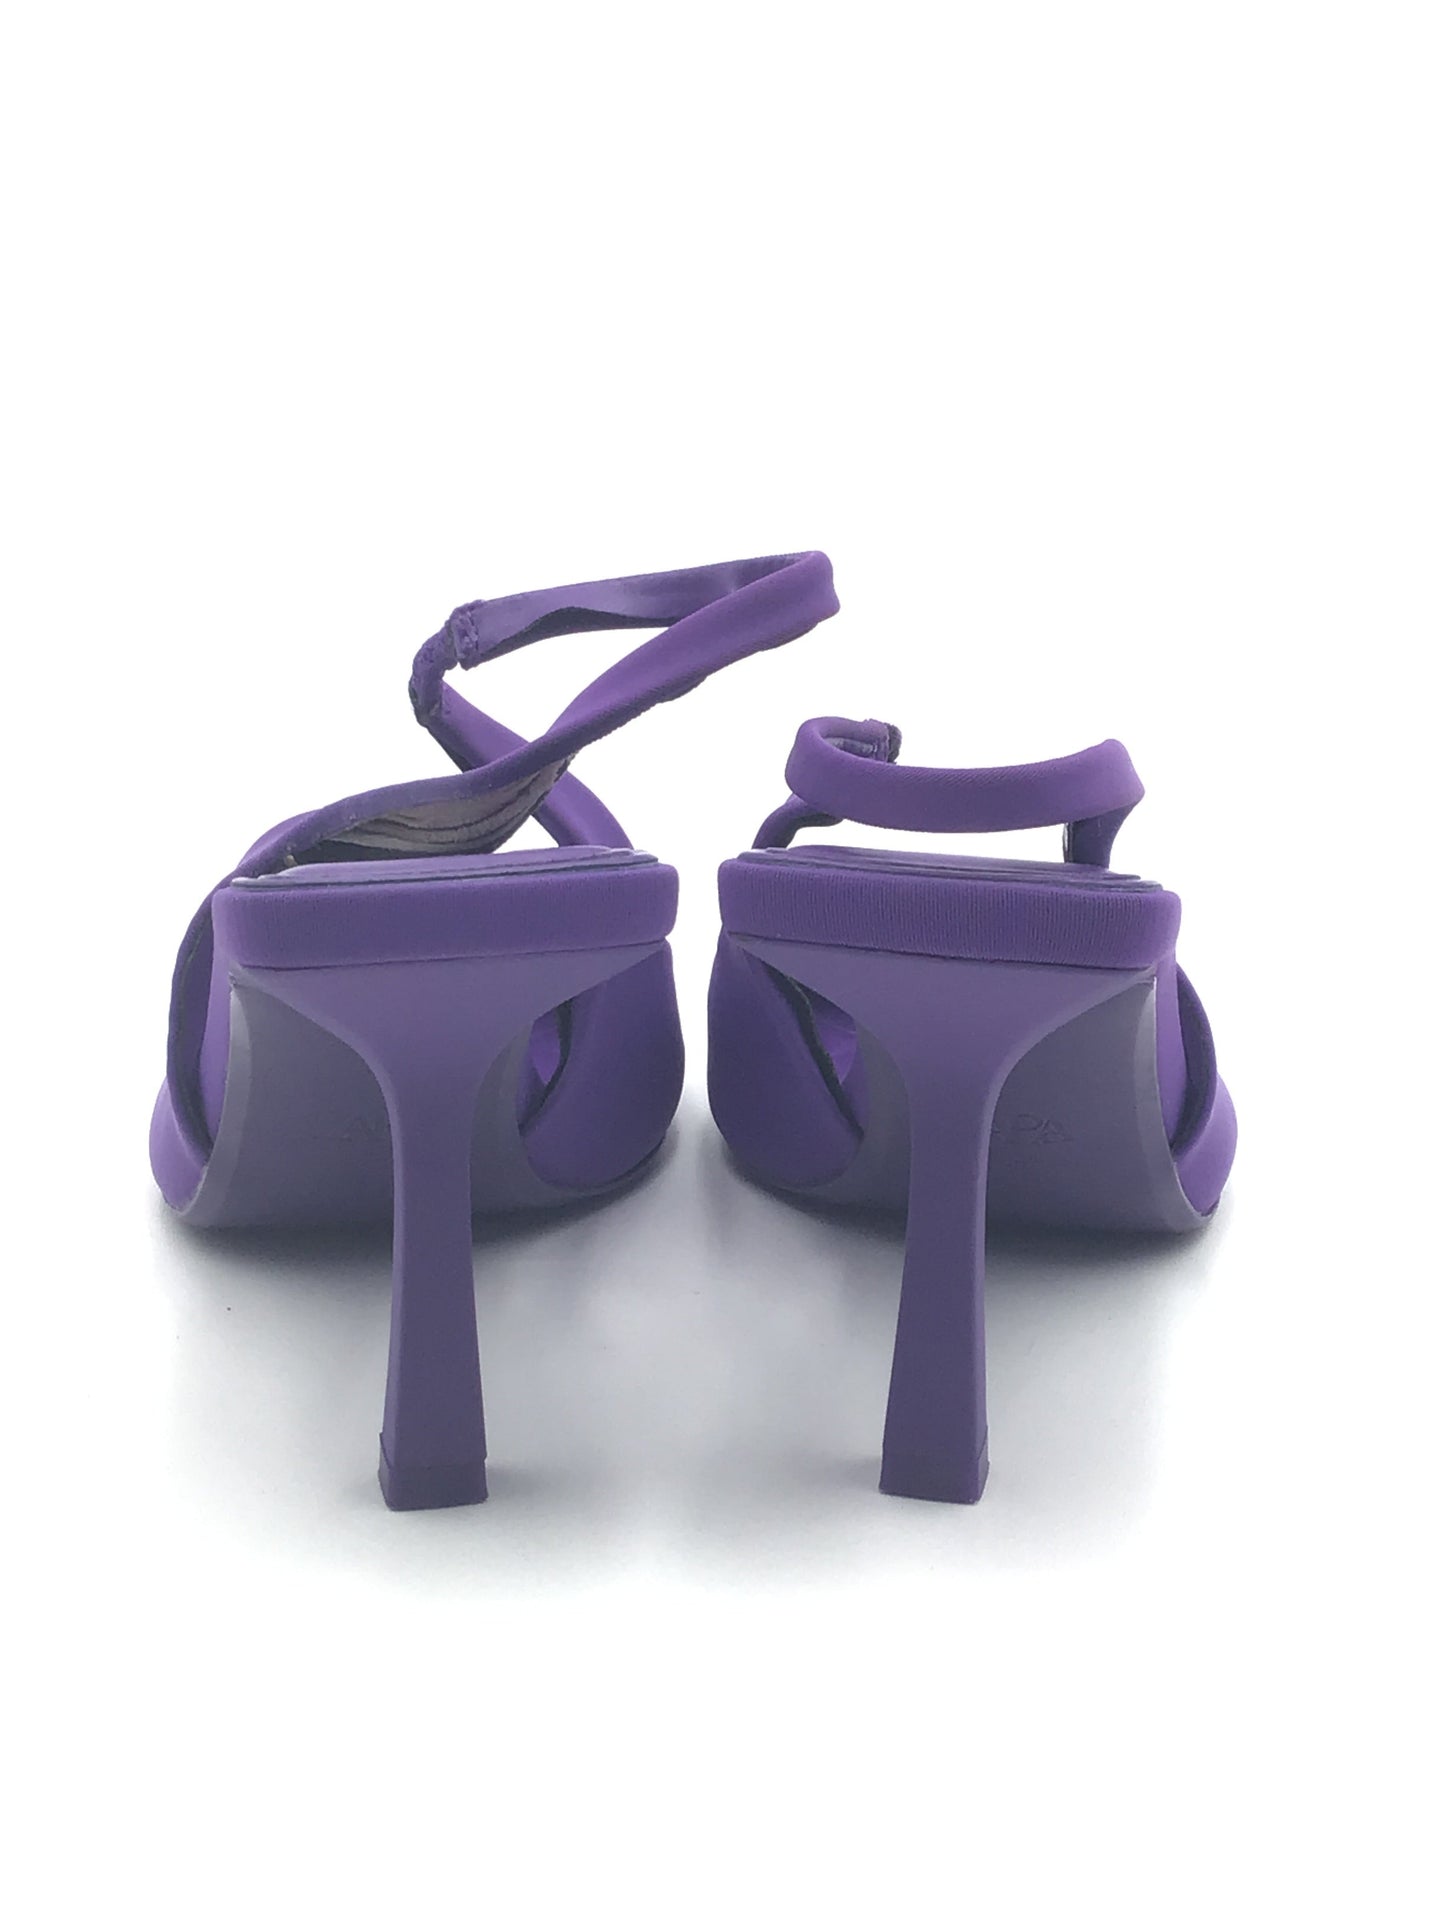 Purple Shoes Heels Stiletto Zara, Size 7